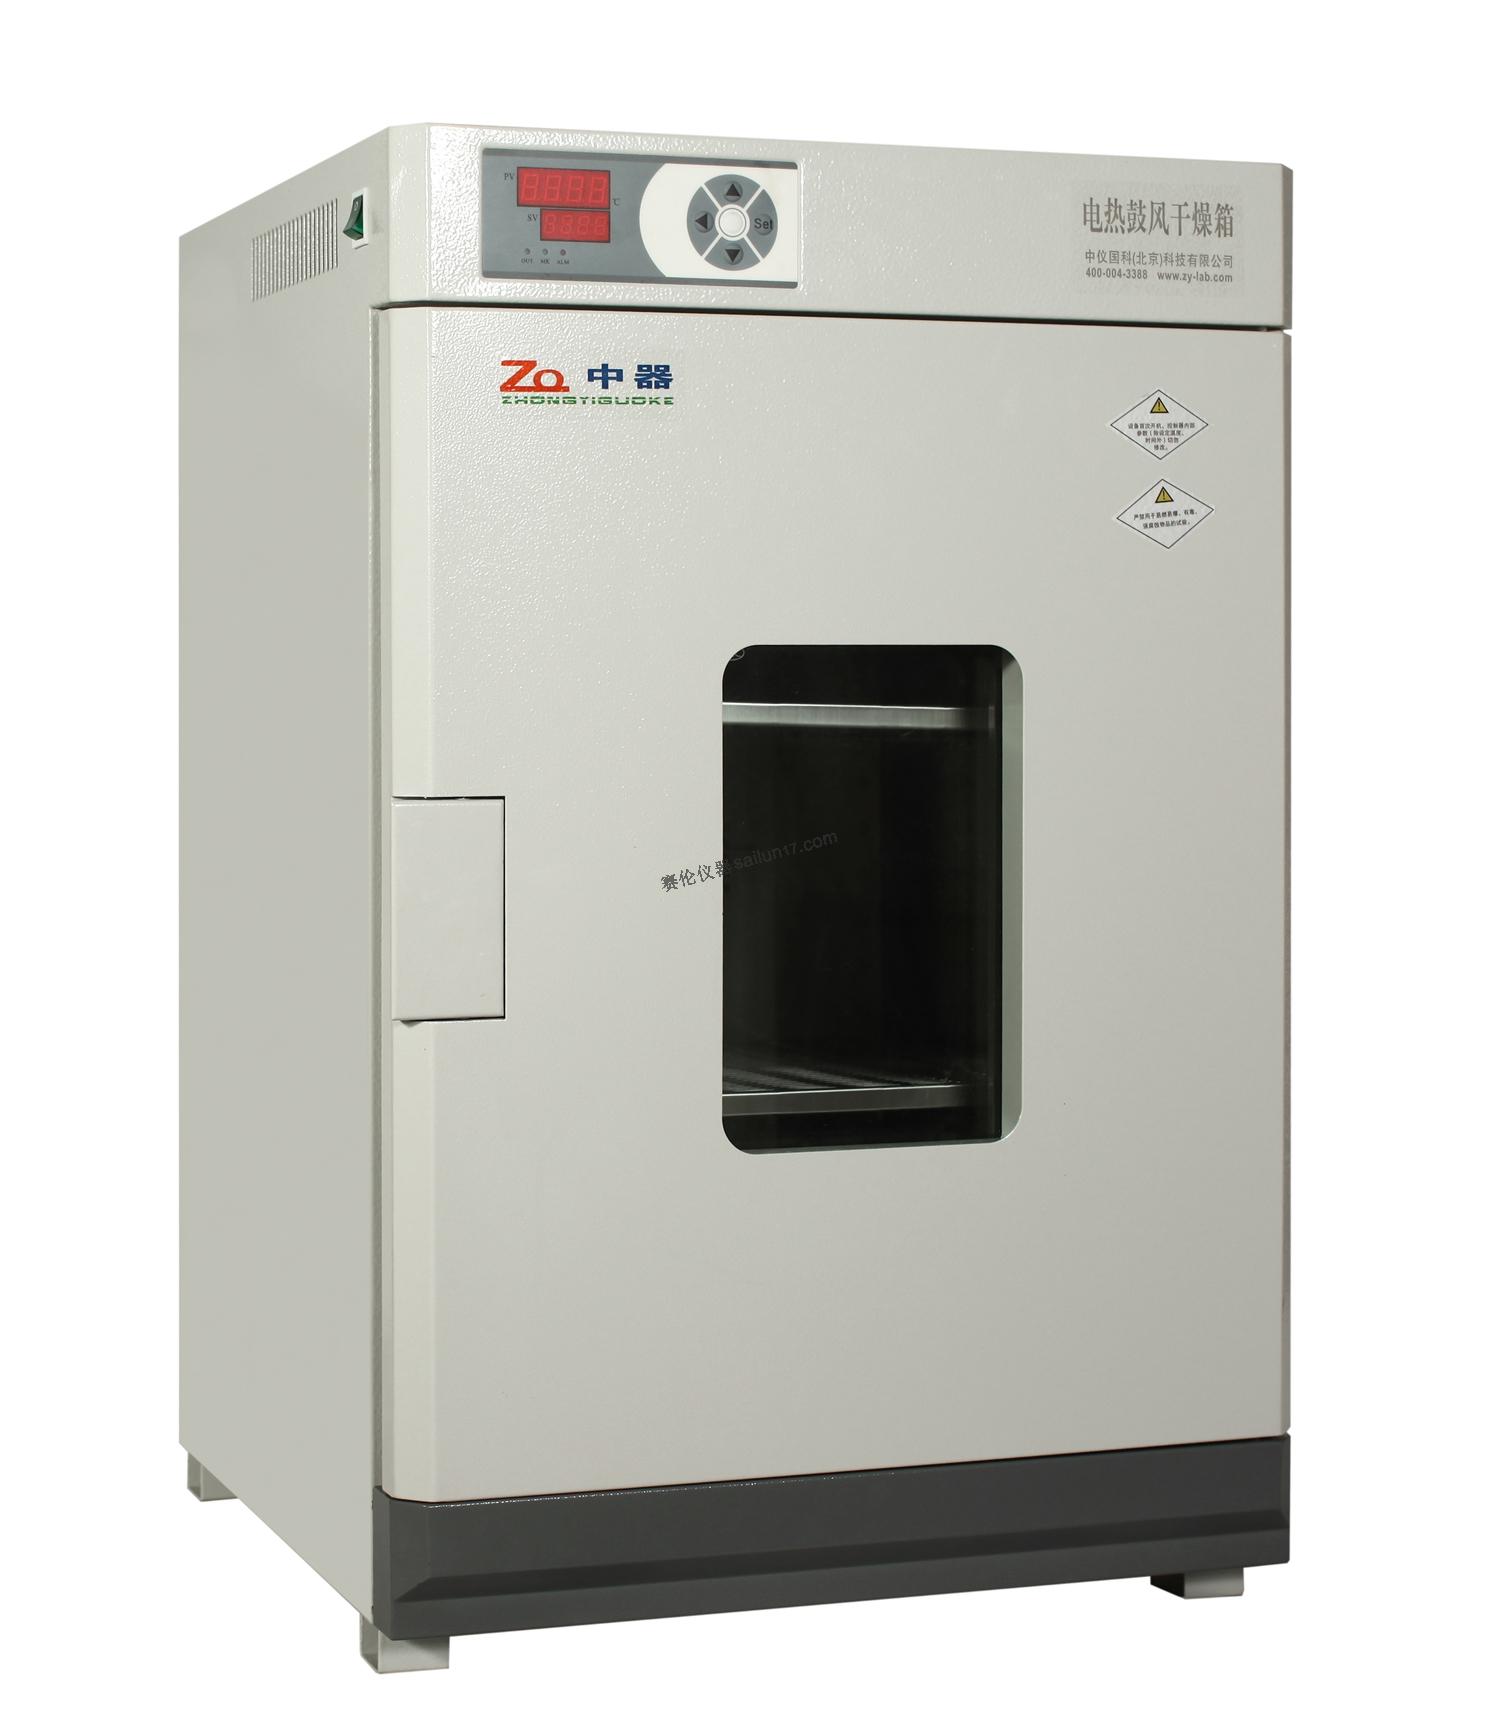 中器DHG-9240A电热鼓风干燥箱(250℃)